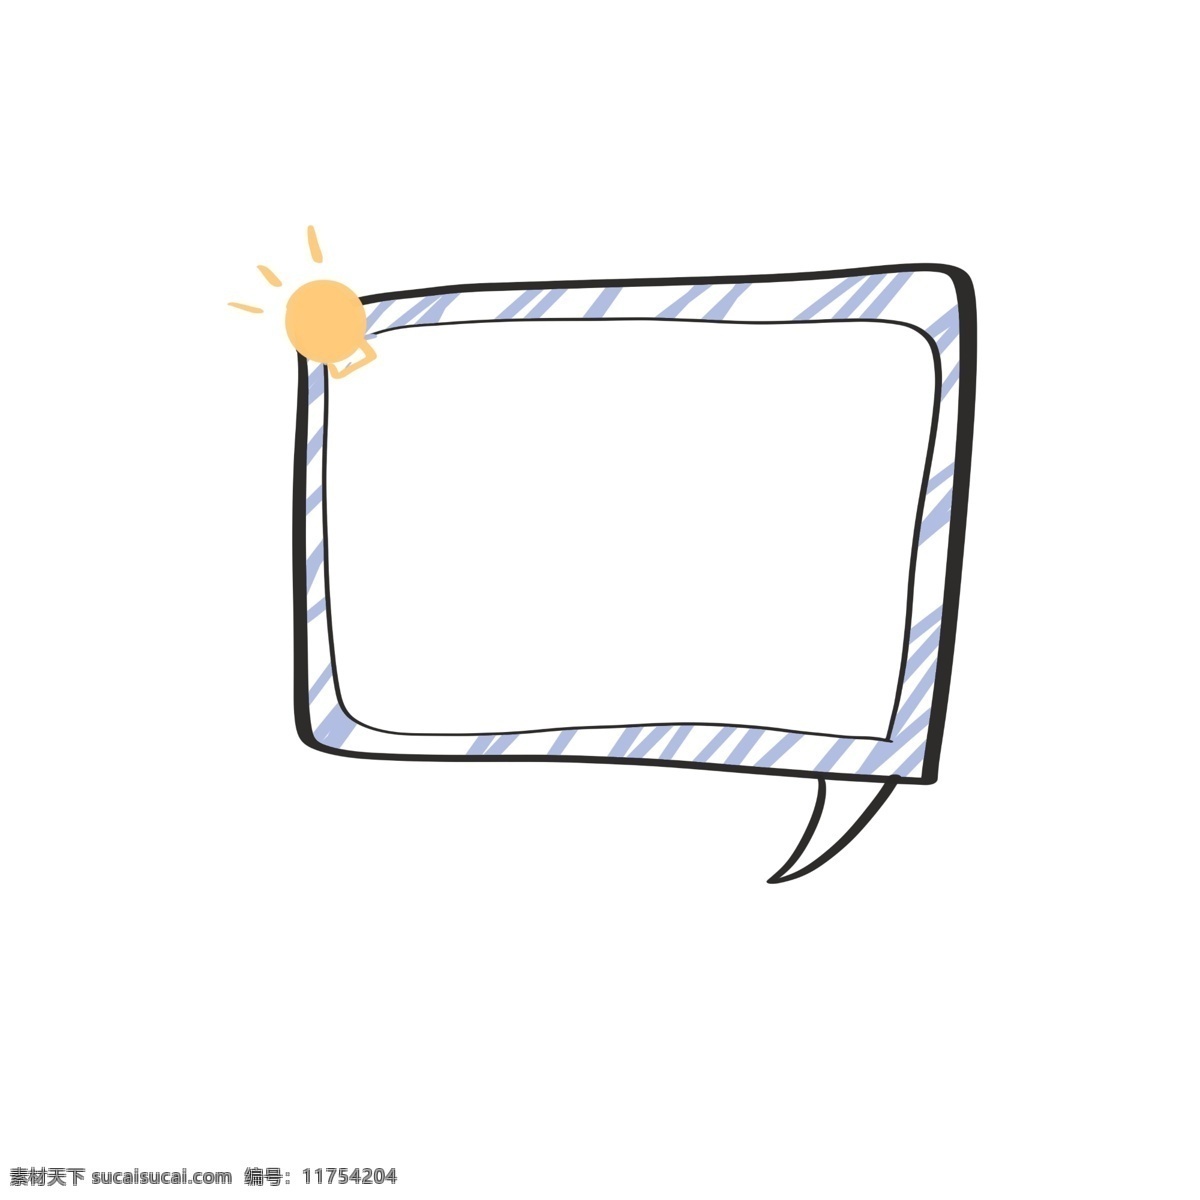 简单 对话框 蓝色 小 灯泡 可爱 对话款 手绘 简约 框 卡通 短信款 简单对话框 小灯泡手绘 方形对话框 卡通手绘